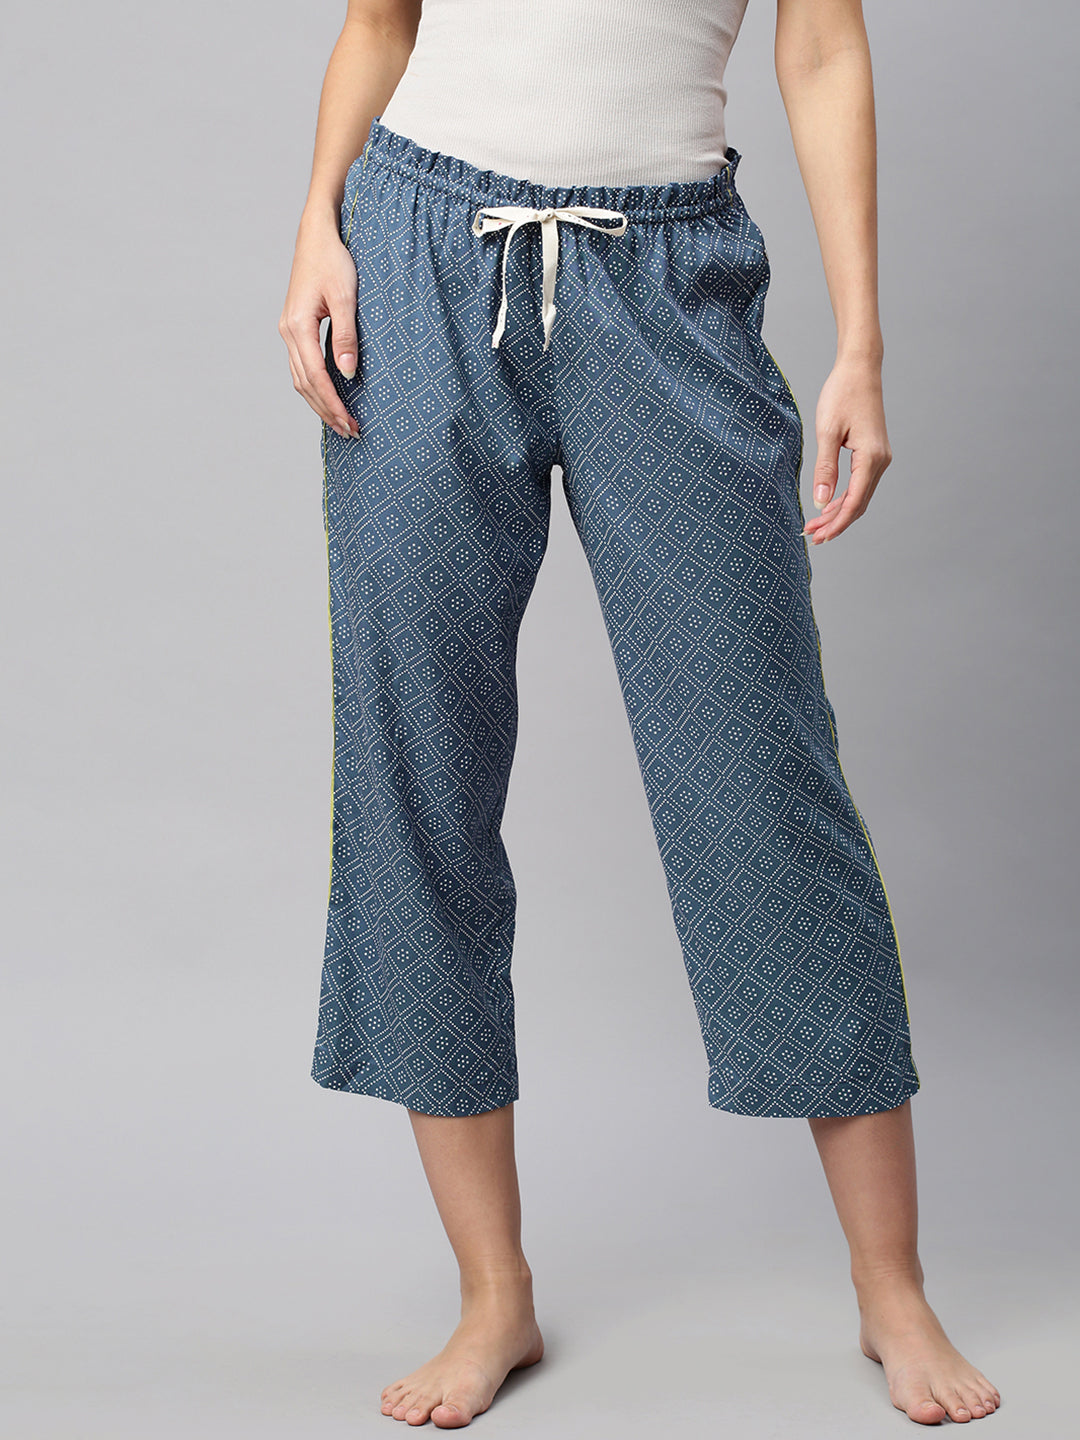 Printed Rayon Pyjamas With Contrast Piping